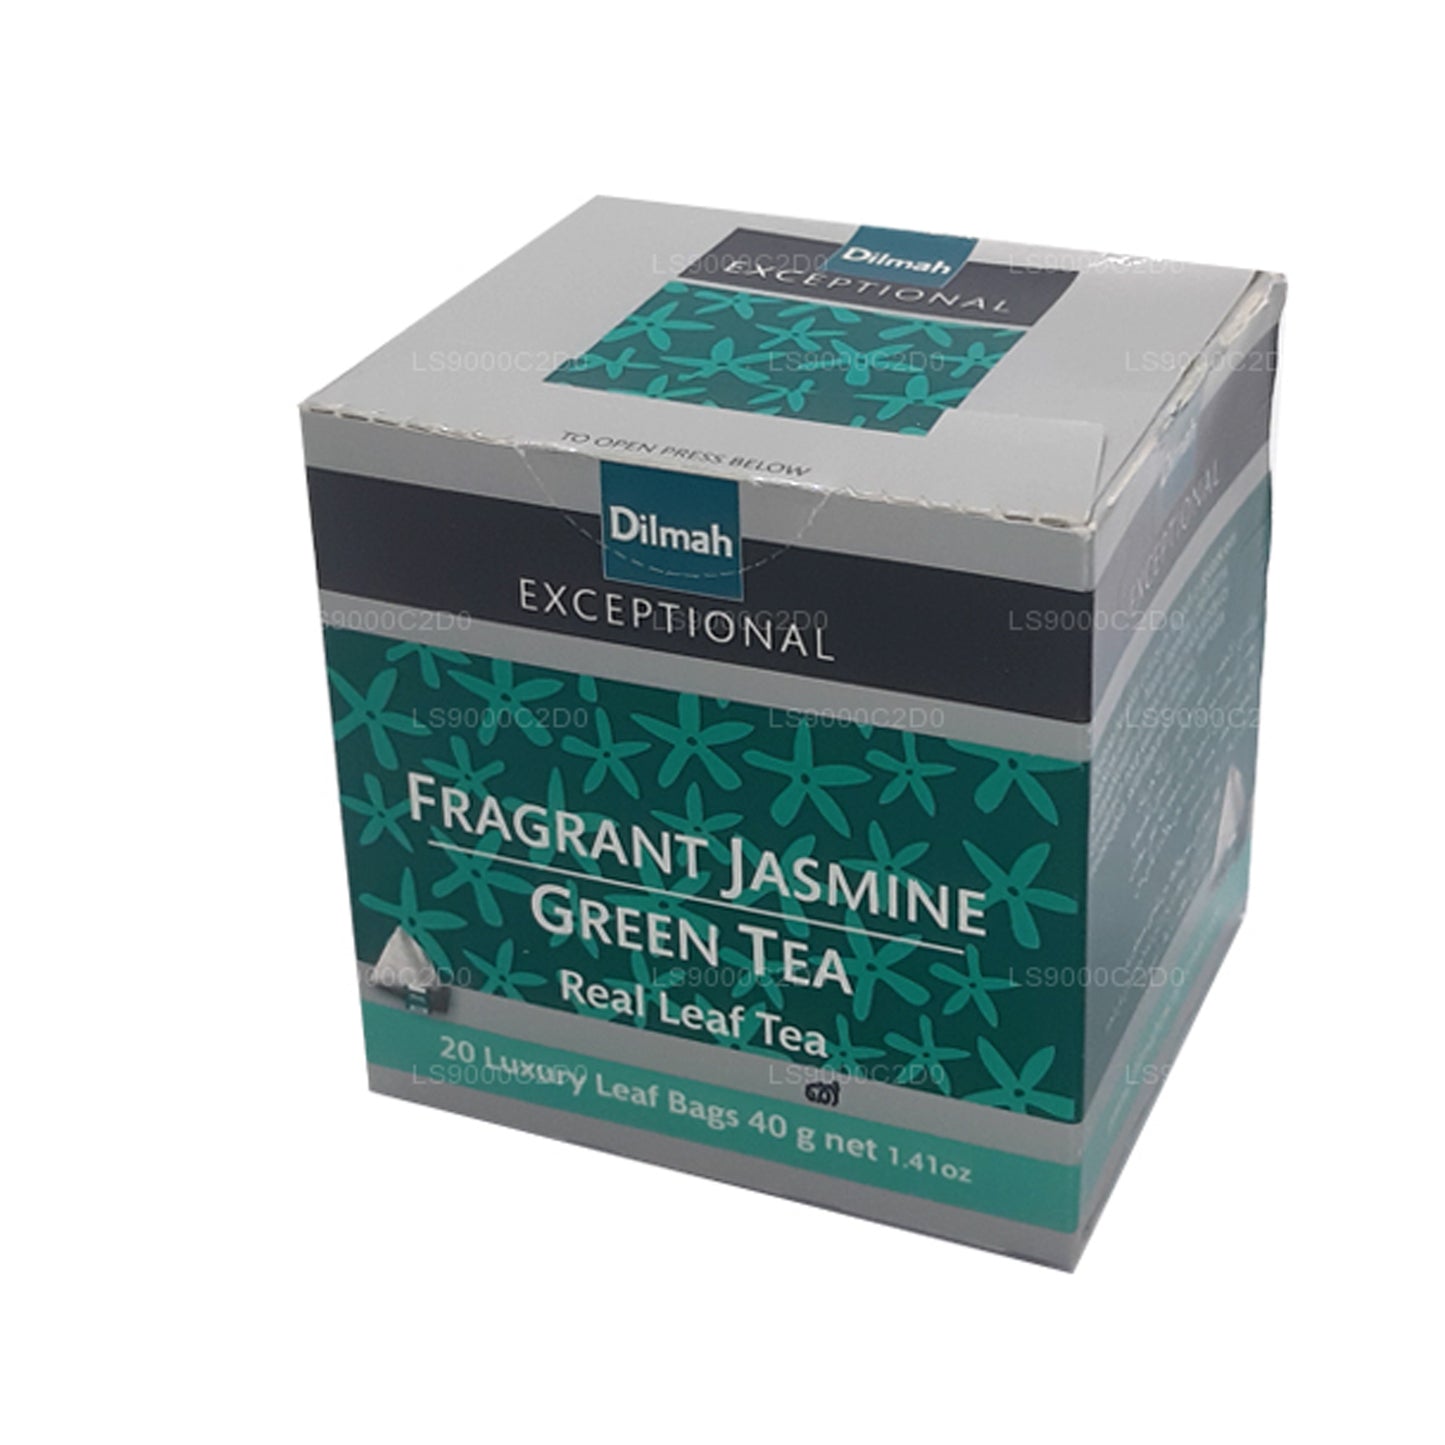 Thé Dilmah Exceptional parfumé au jasmin et à la vraie feuille verte (40 g) 20 sachets de thé